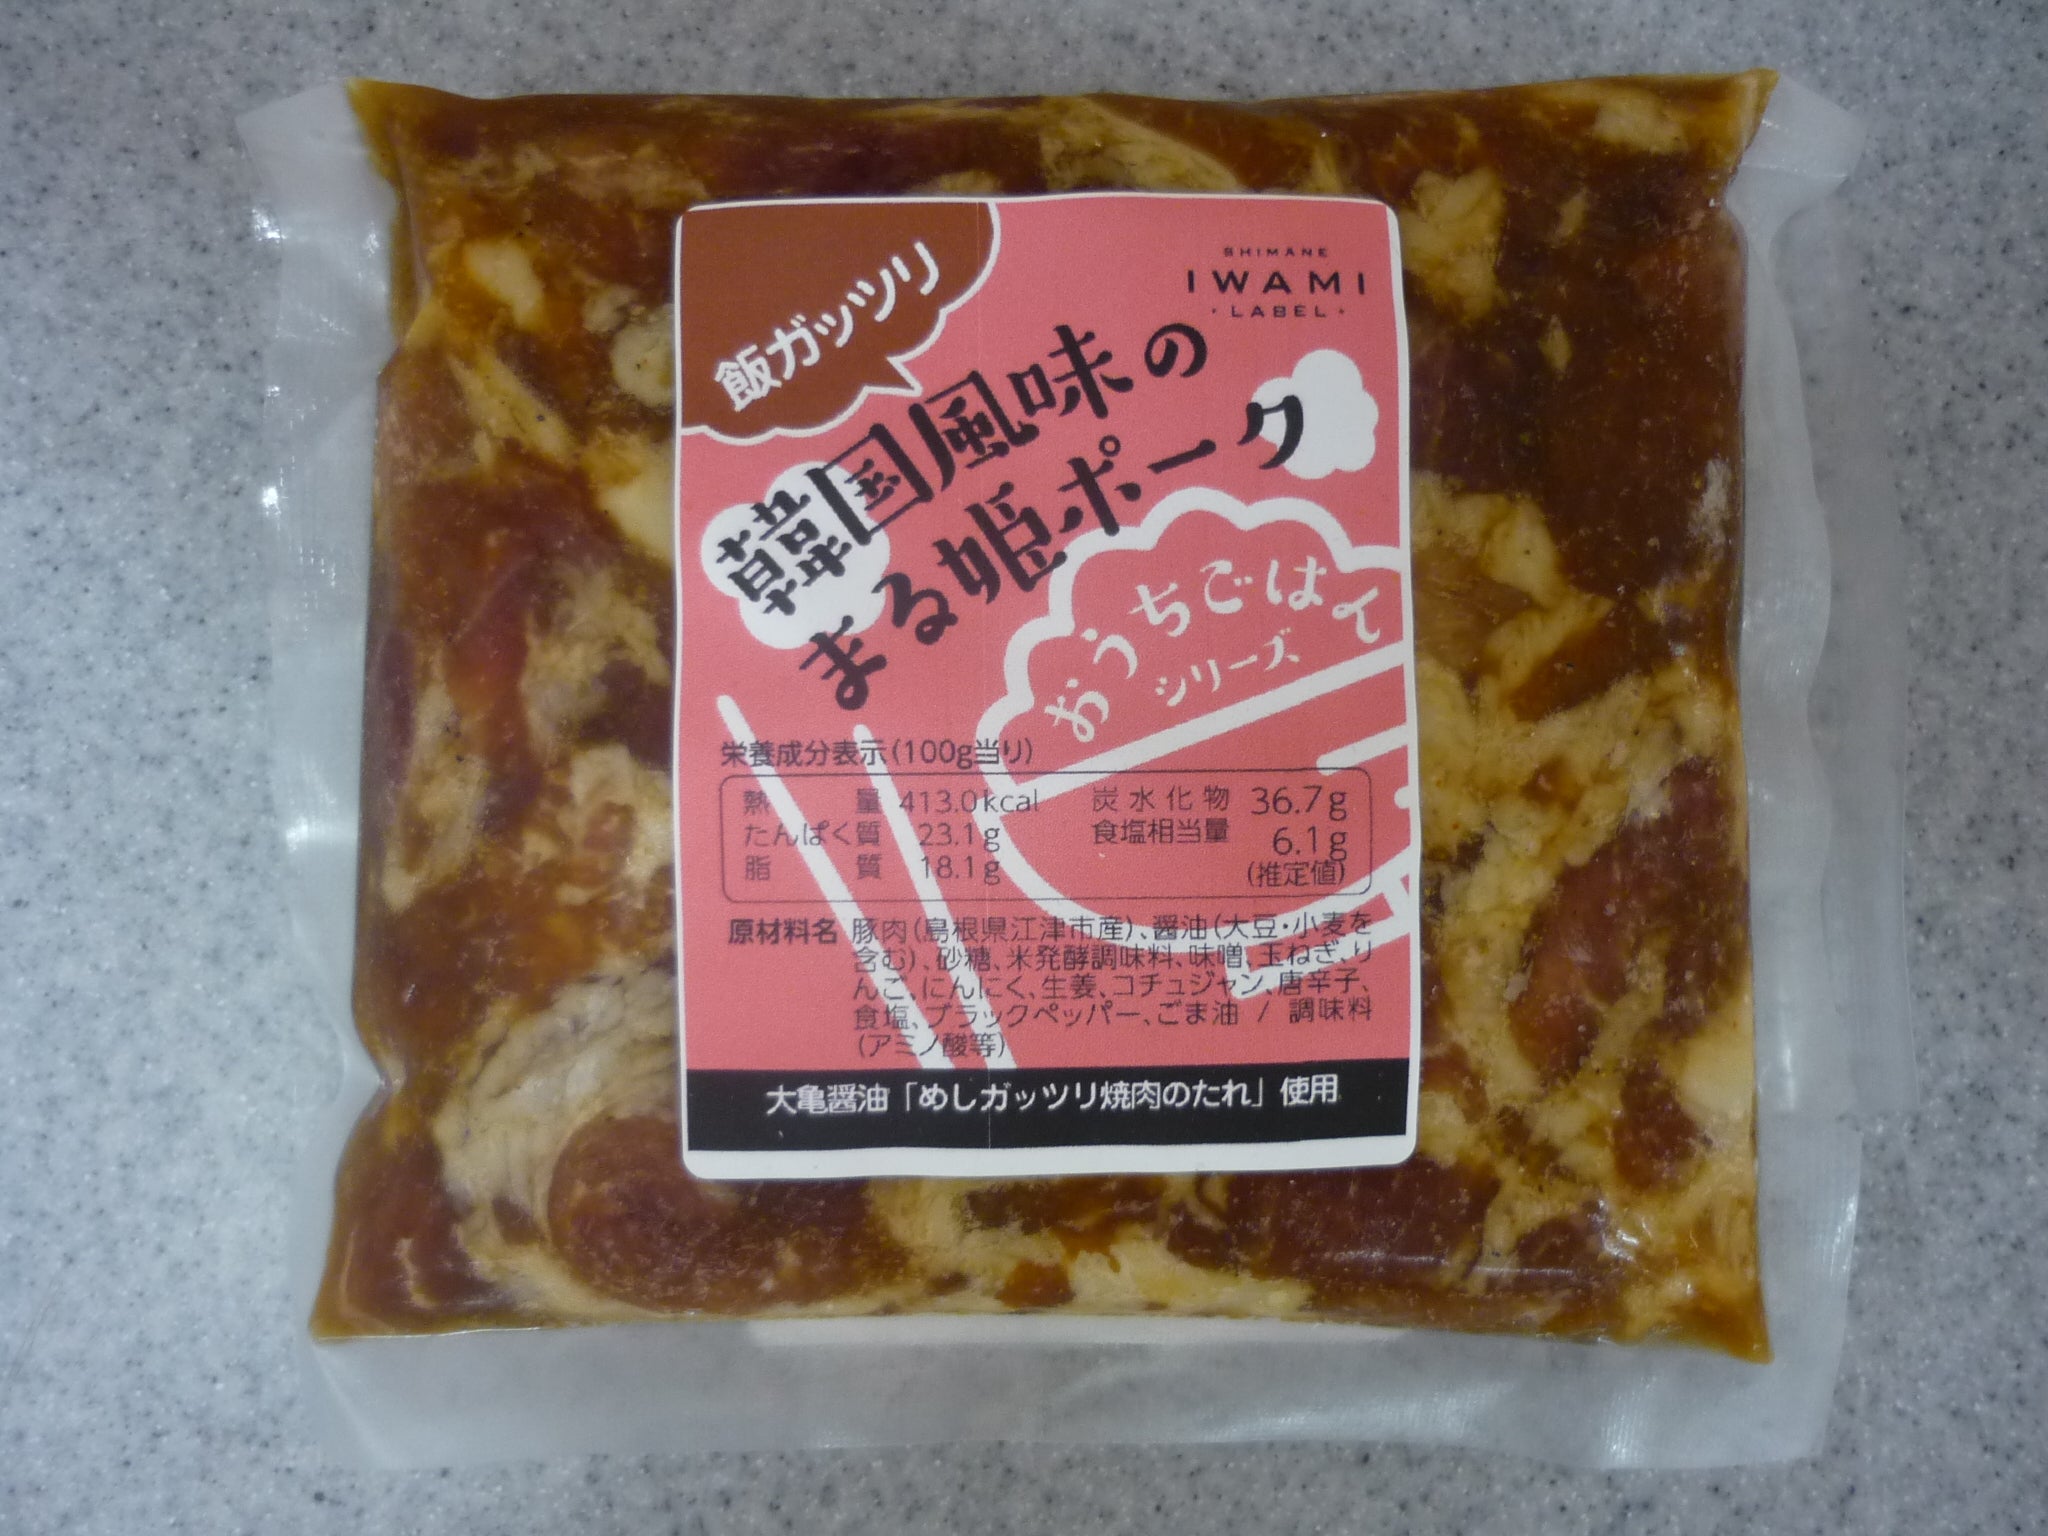 おうちごはんシリーズ 飯ガッツリ韓国味のまる姫ポーク いわみレーベル